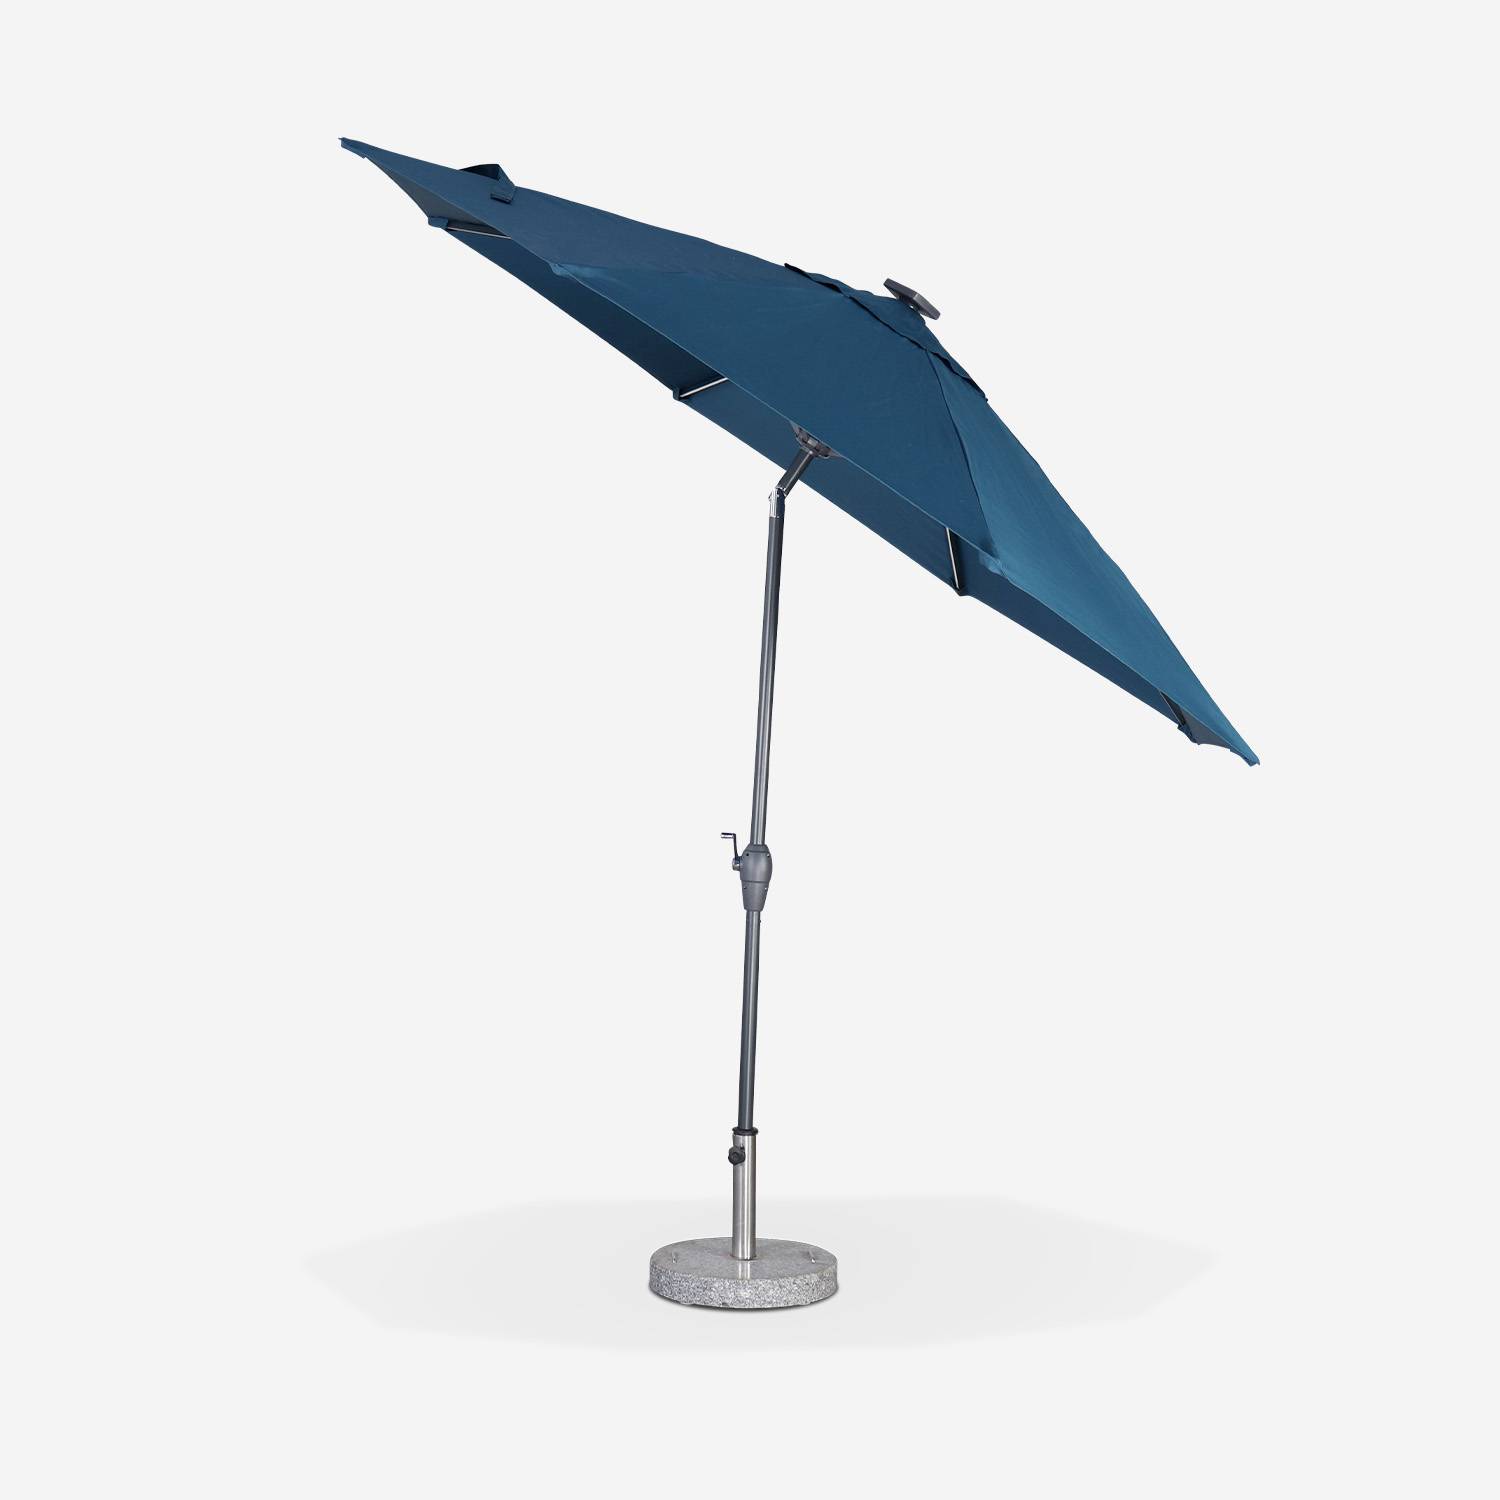 Ronde LED parasol  Ø 2,7m - Helios Donker turquoise - Stokparasol met geïntegreerde verlichting en hendel Photo2